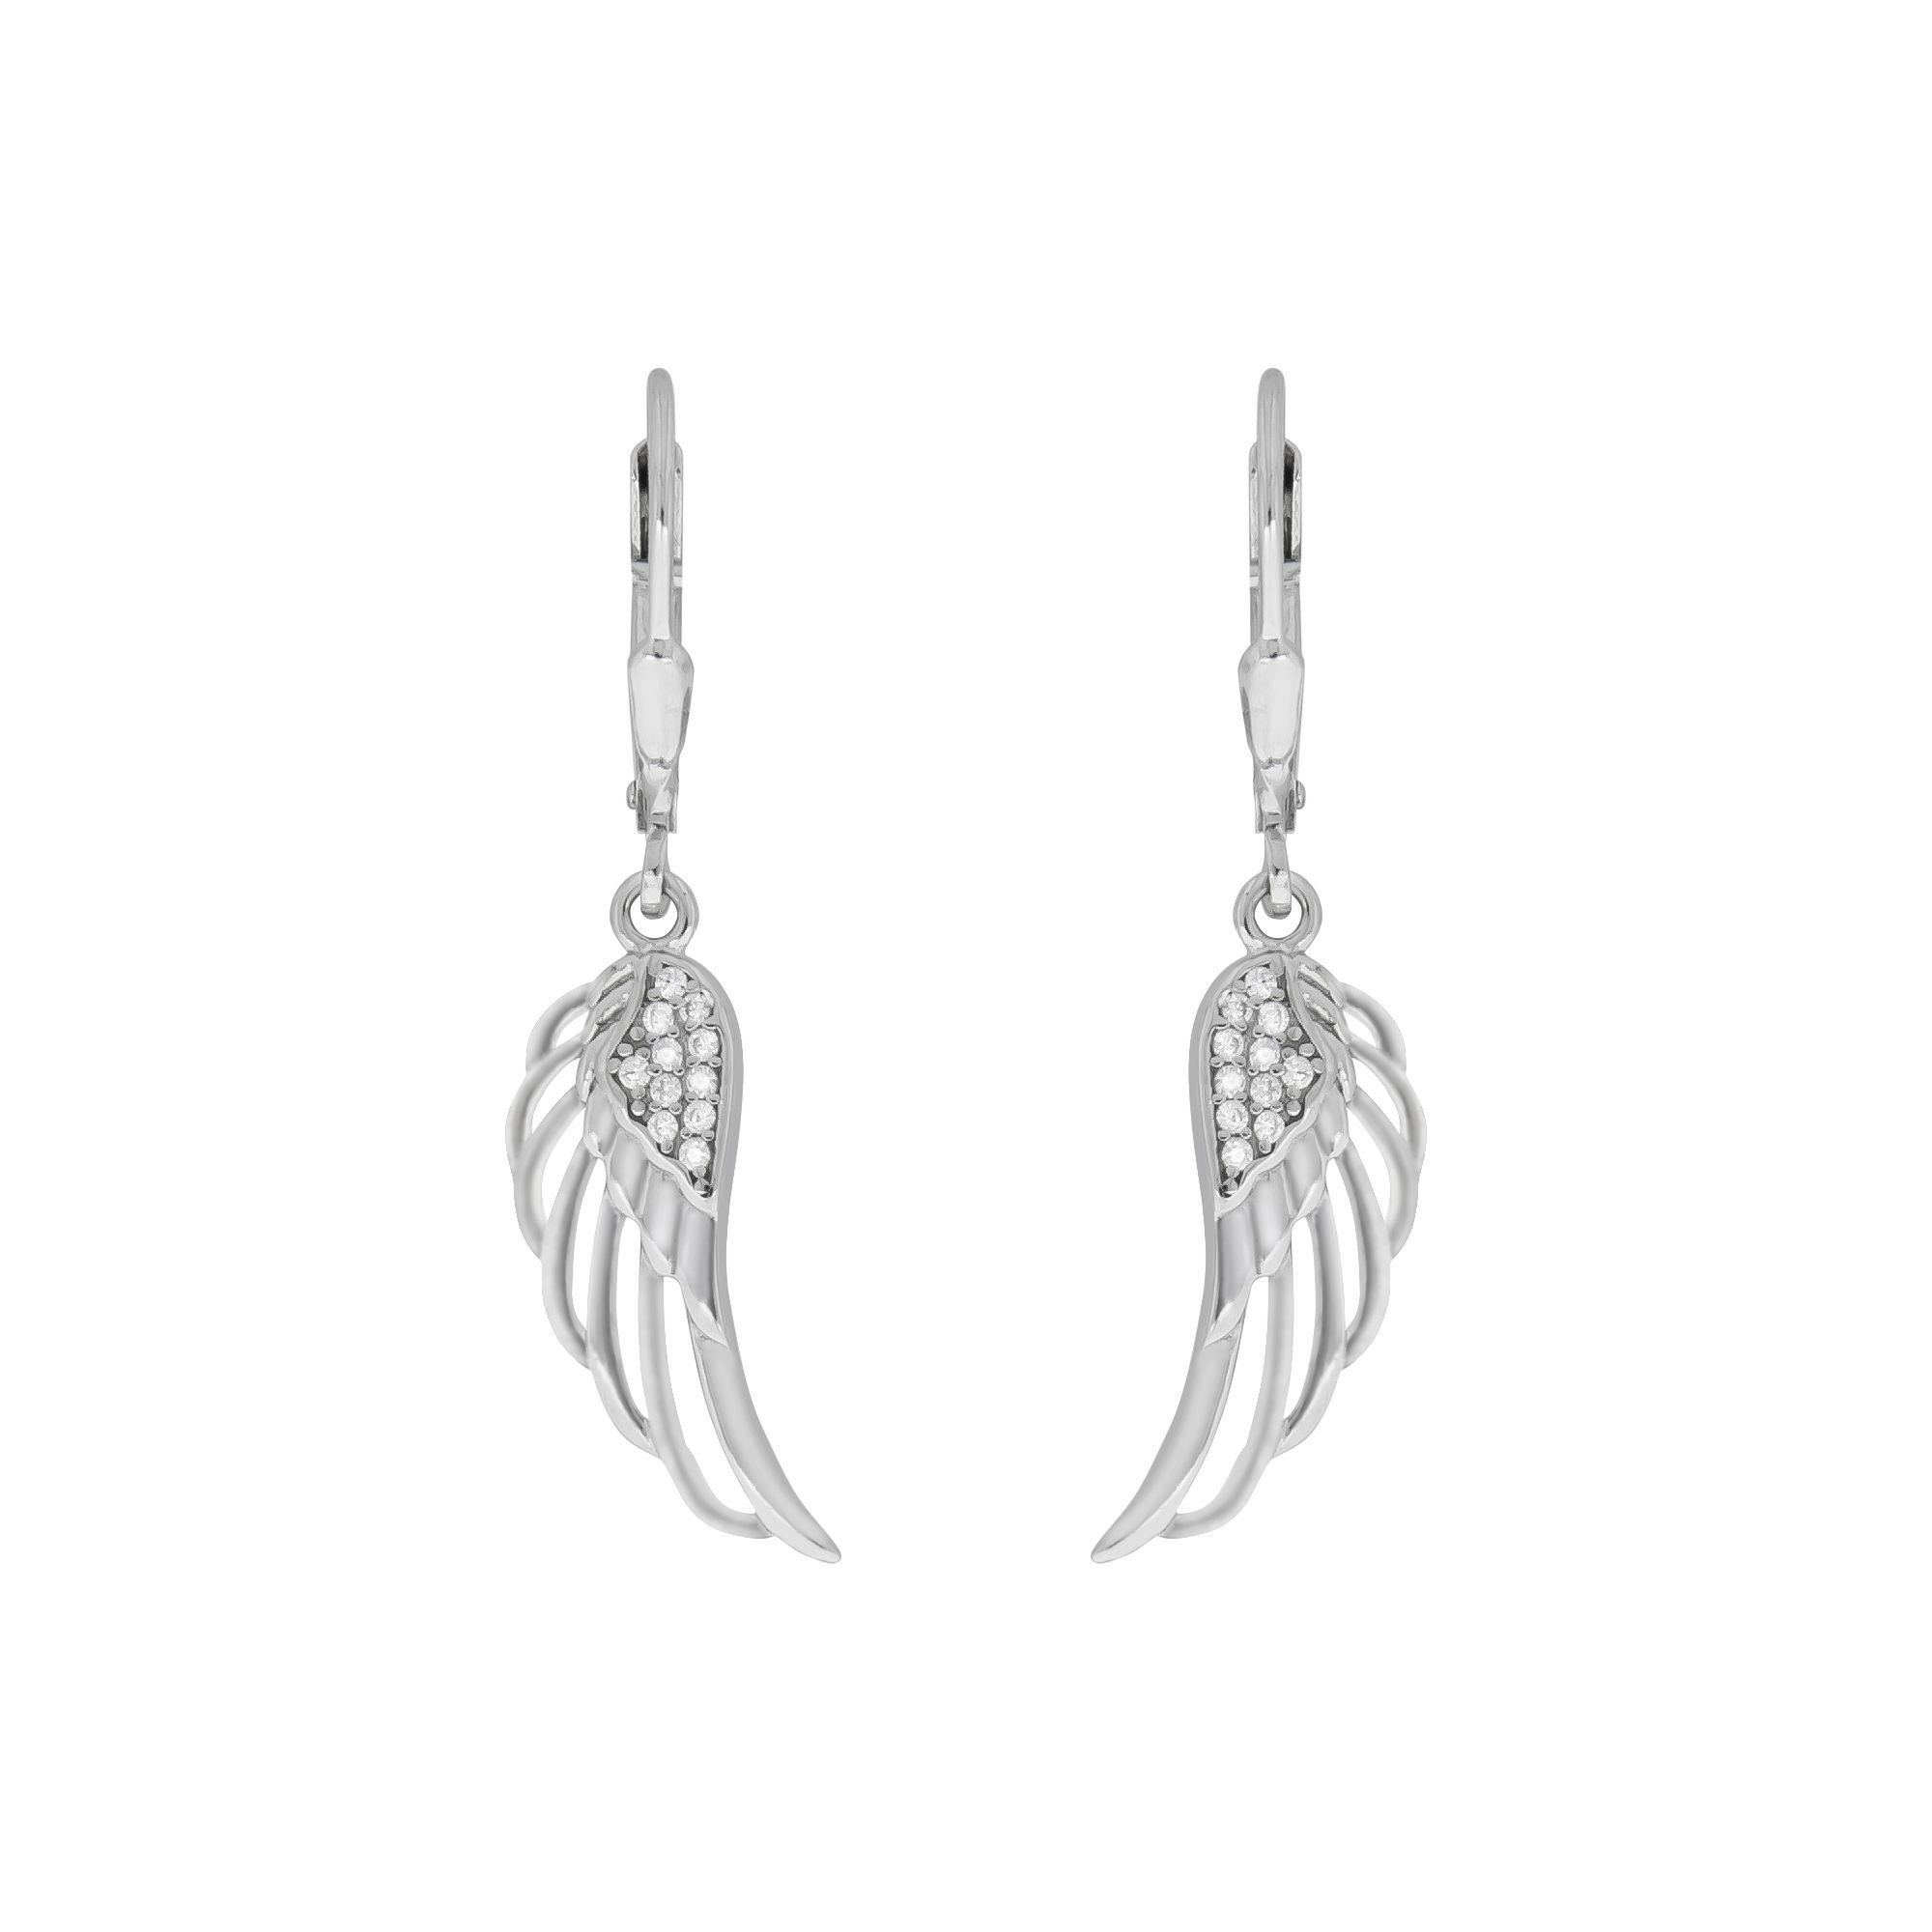 Vivance Paar Ohrhänger 925/- Sterling Silber rhodiniert Zirkonia, Elegante  Ohrhänger aus 925/- Sterling Silber | Ohrhänger